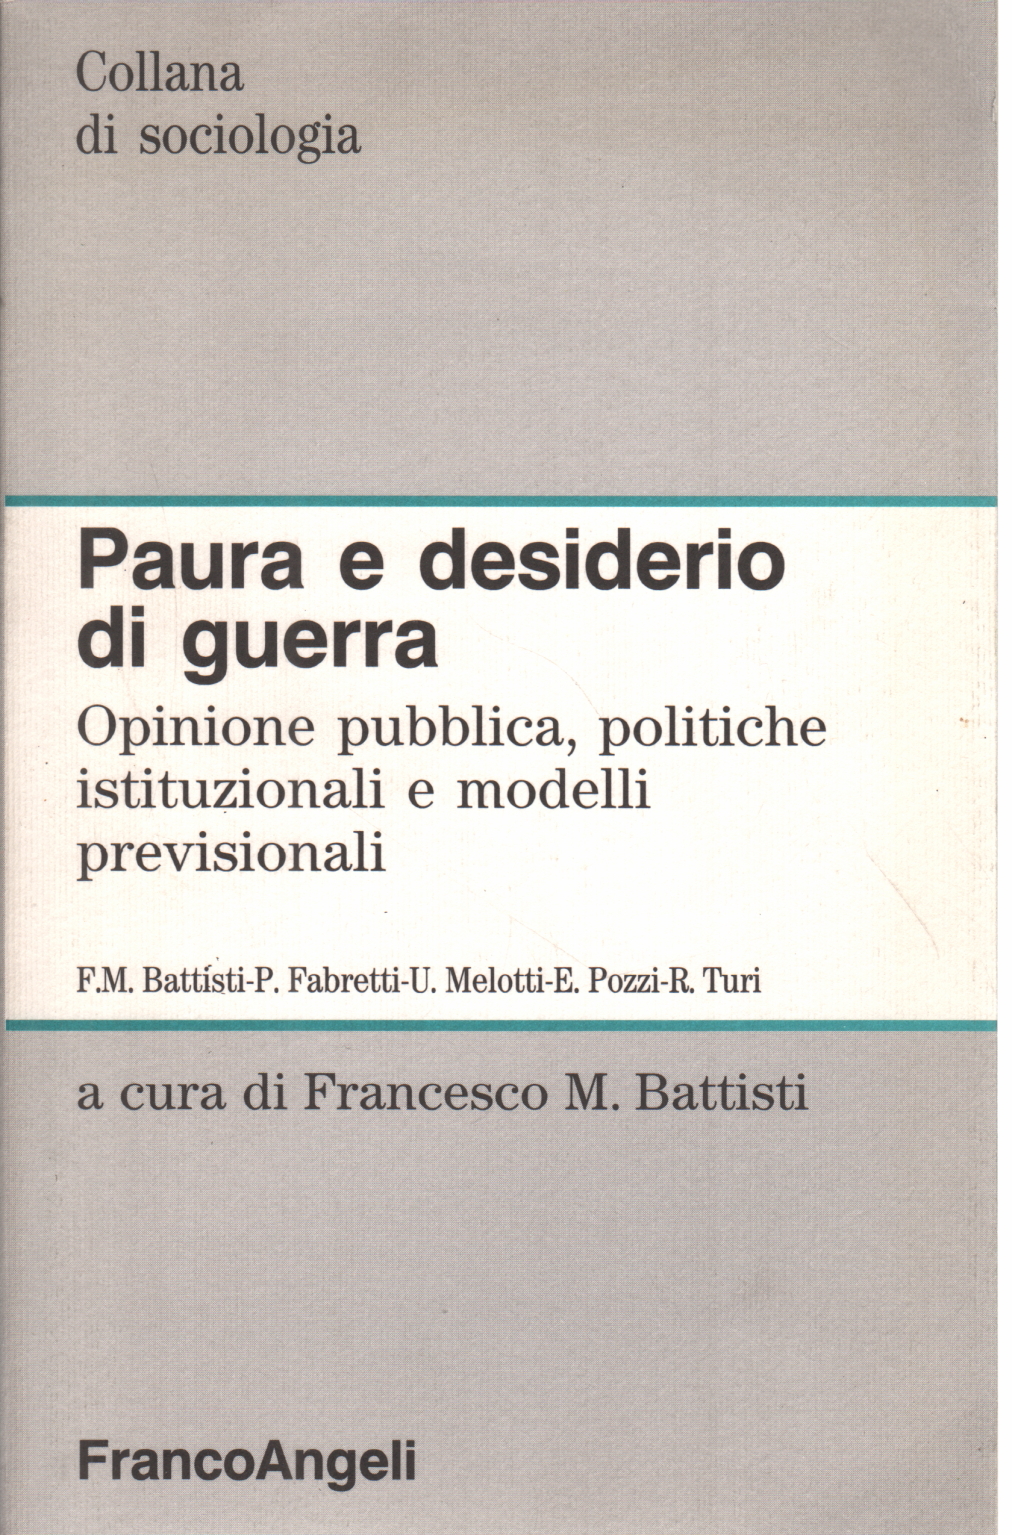 Paura e desiderio di guerra, Francesco M. Battisti